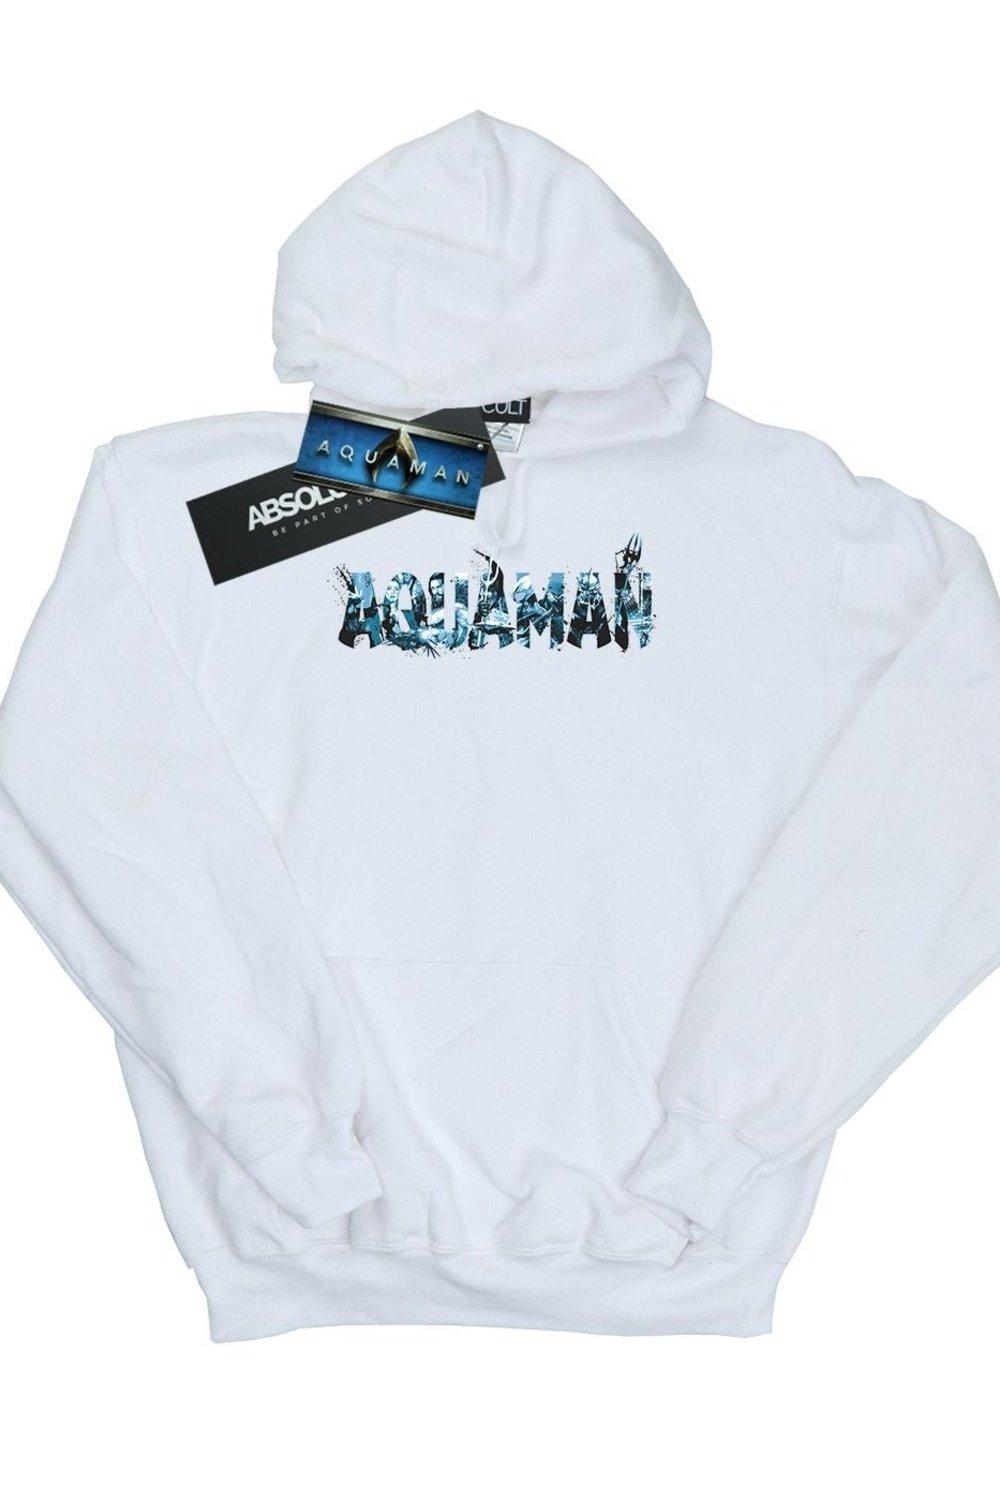 Толстовка с текстовым логотипом Aquaman DC Comics, белый носки dc comics pixel – aquaman белые